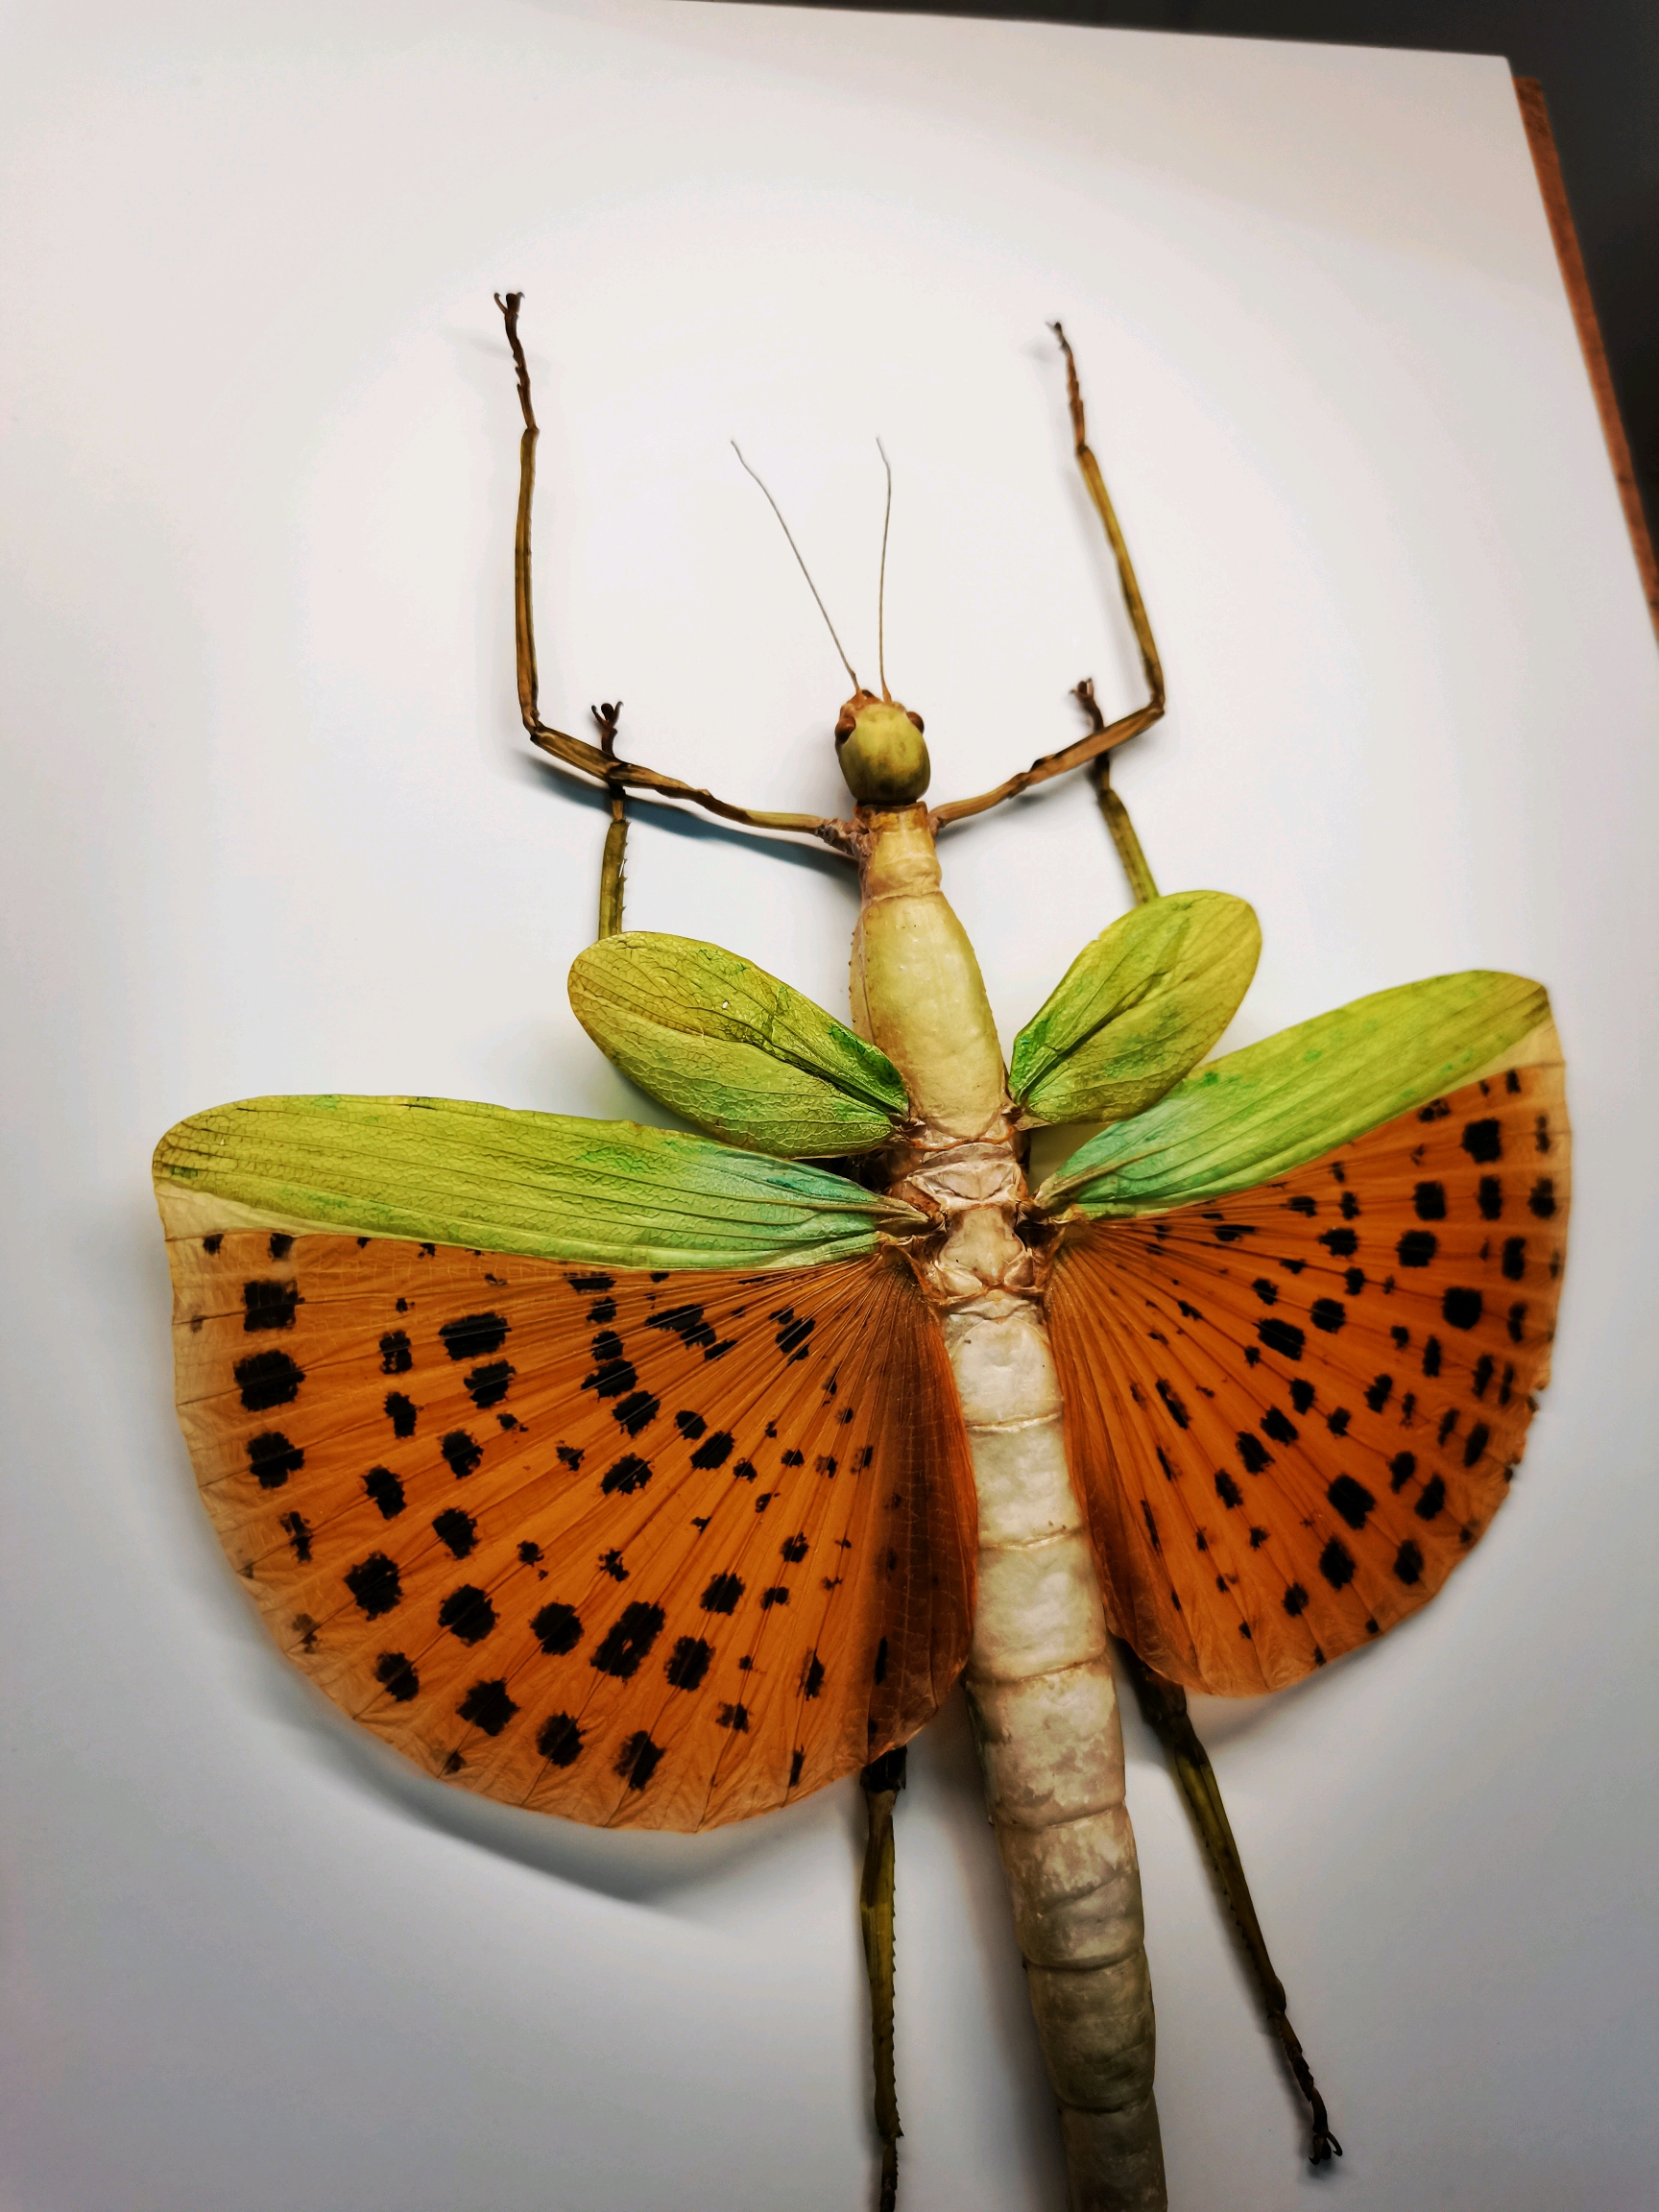 兴趣 手工 【昆虫标本】竹节虫标本,蝴蝶标本,螳螂标本合集